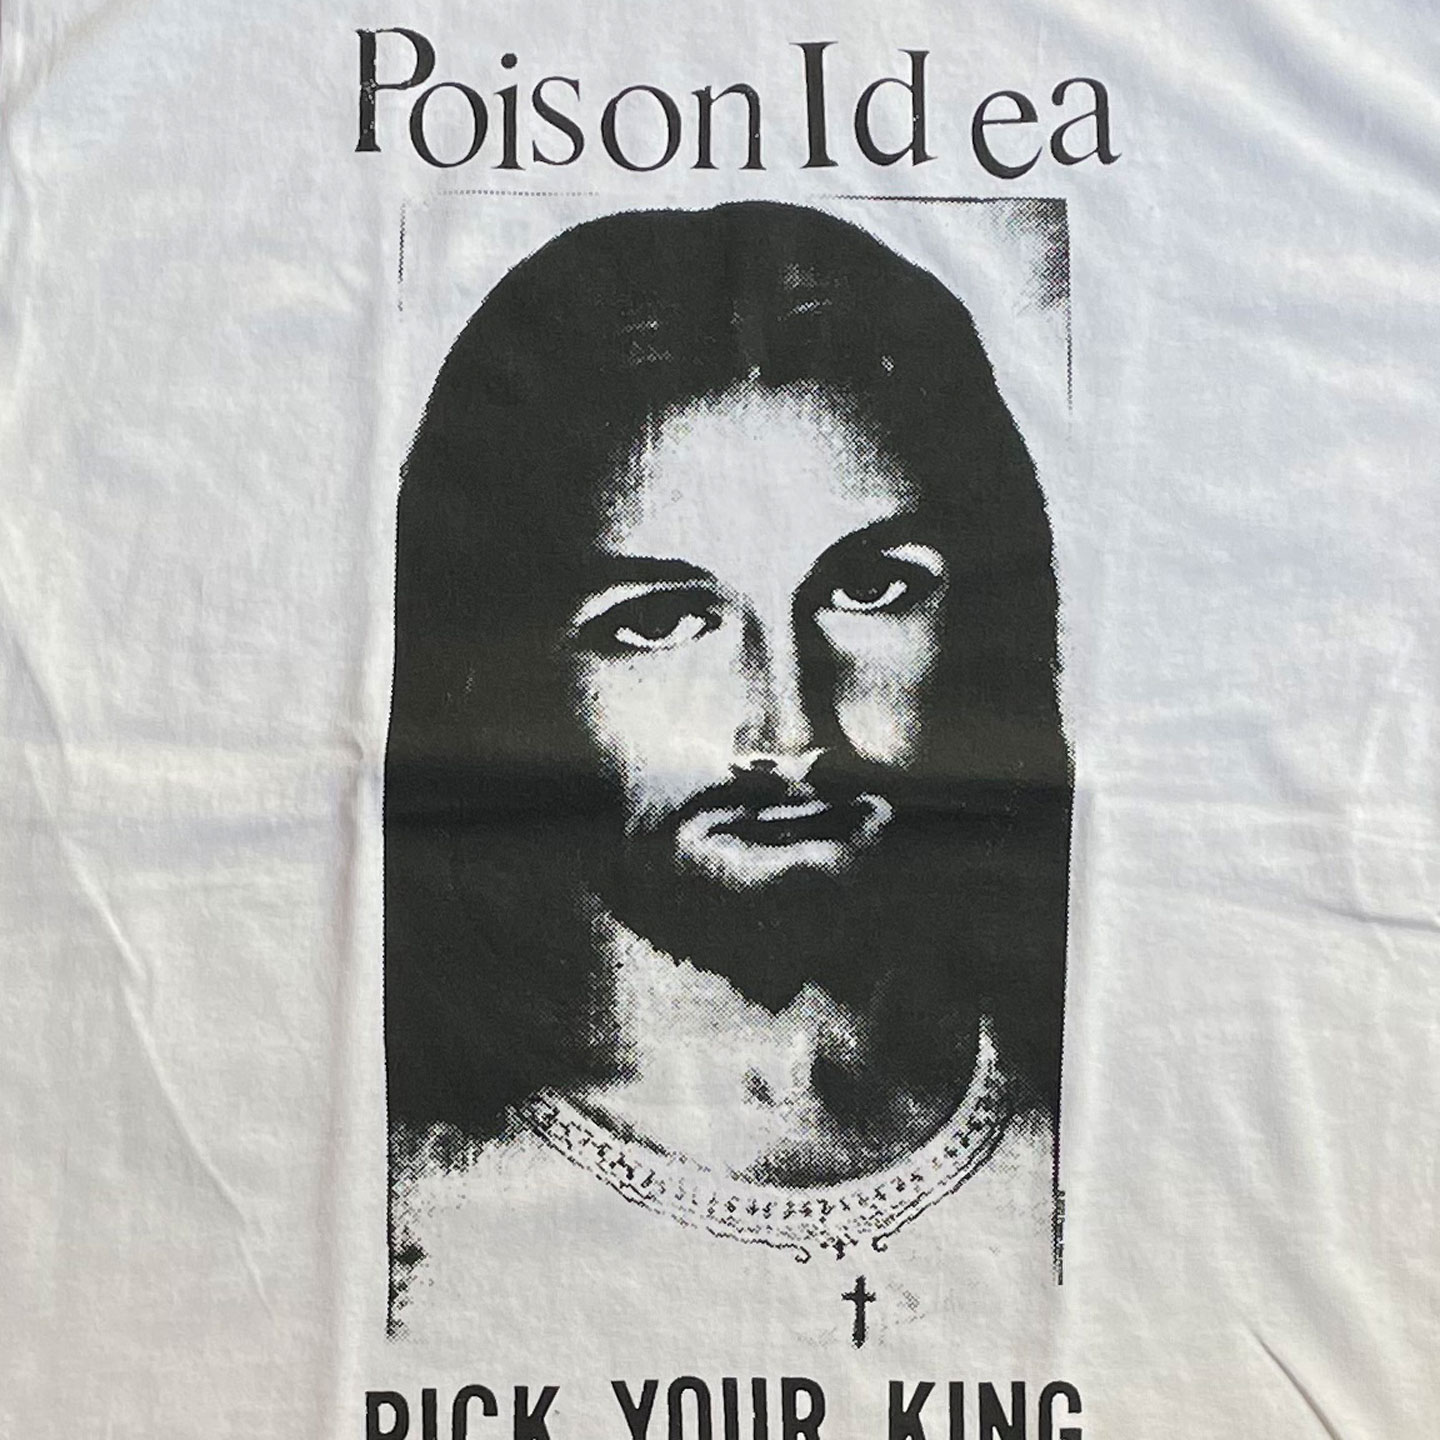 POISON IDEA Tシャツ PICK YOUR KING オフィシャル！